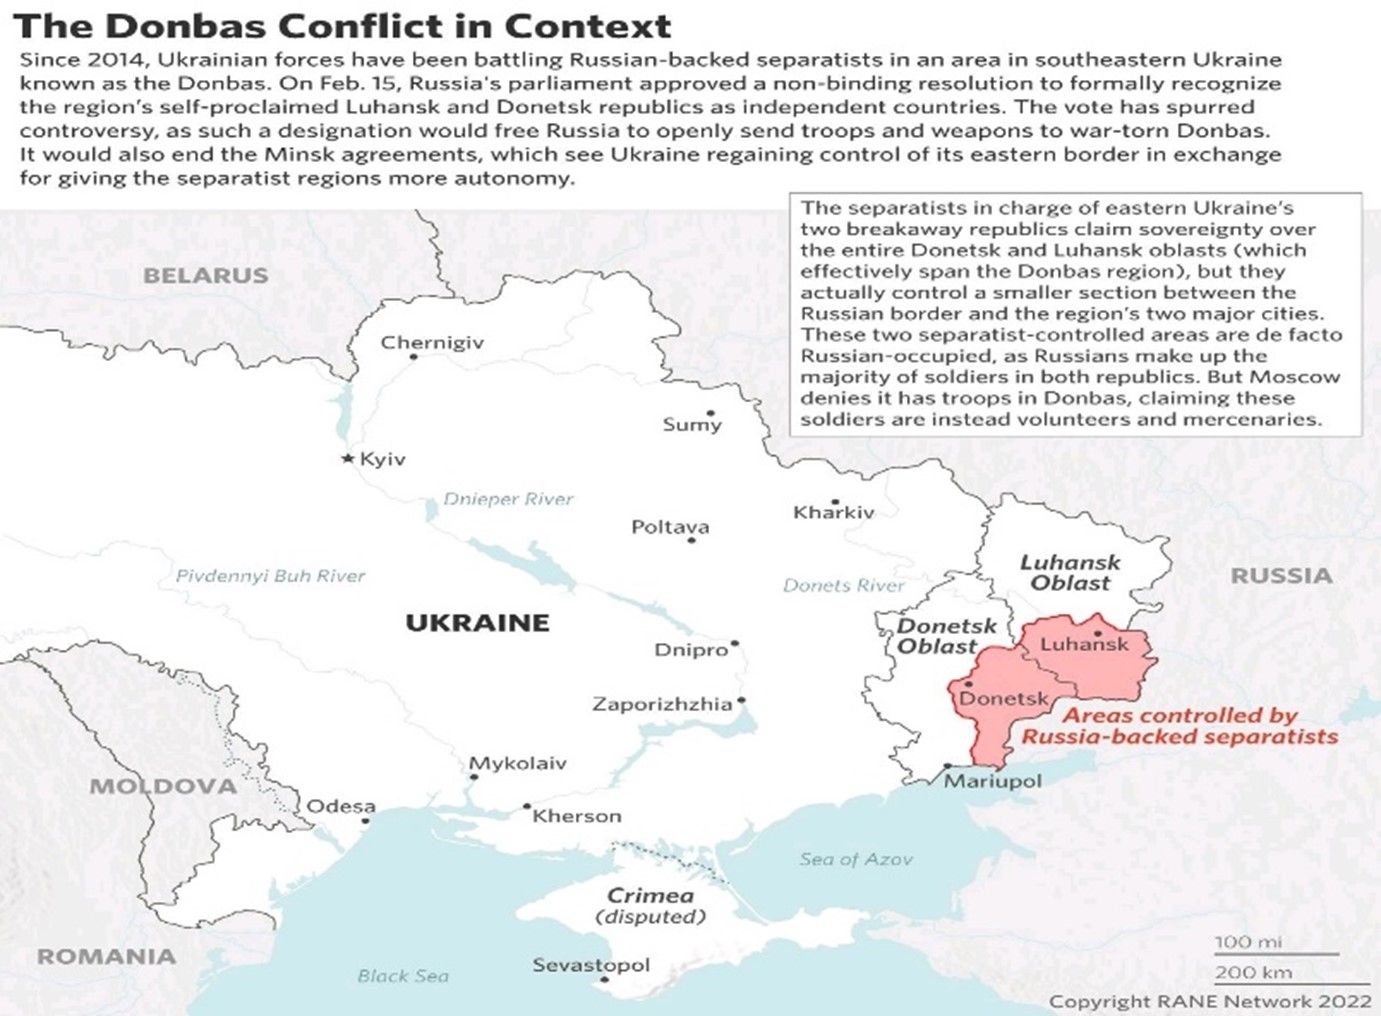 Contexto del conflicto del Donbas